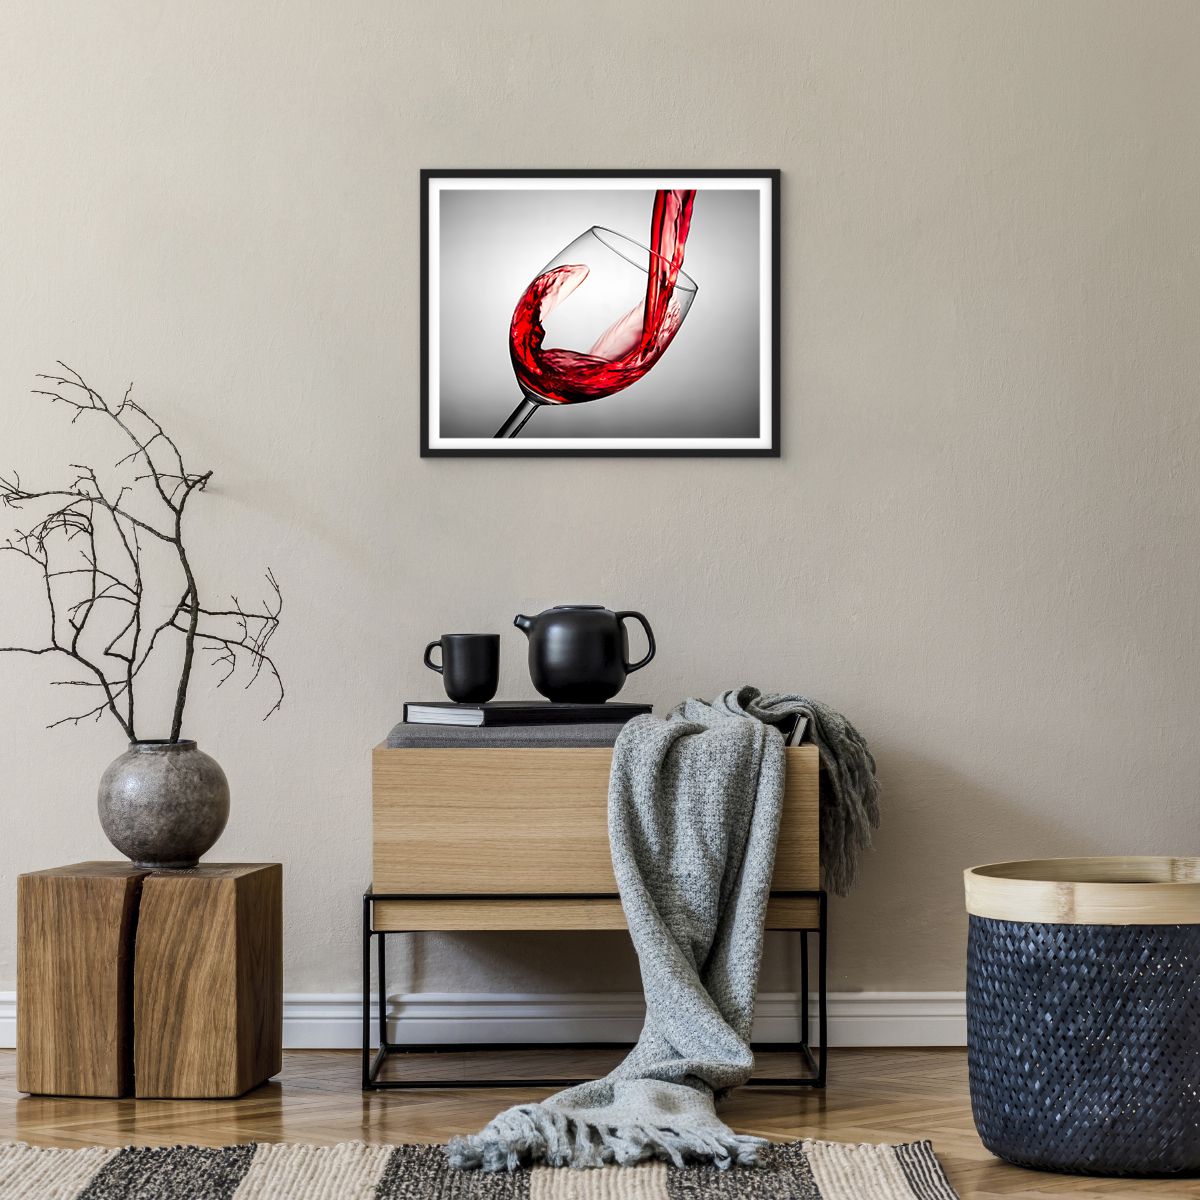 Poster in einem schwarzem Rahmen Weinglas, Poster in einem schwarzem Rahmen Rotwein, Poster in einem schwarzem Rahmen Gastronomie, Poster in einem schwarzem Rahmen Spiel, Poster in einem schwarzem Rahmen Toast